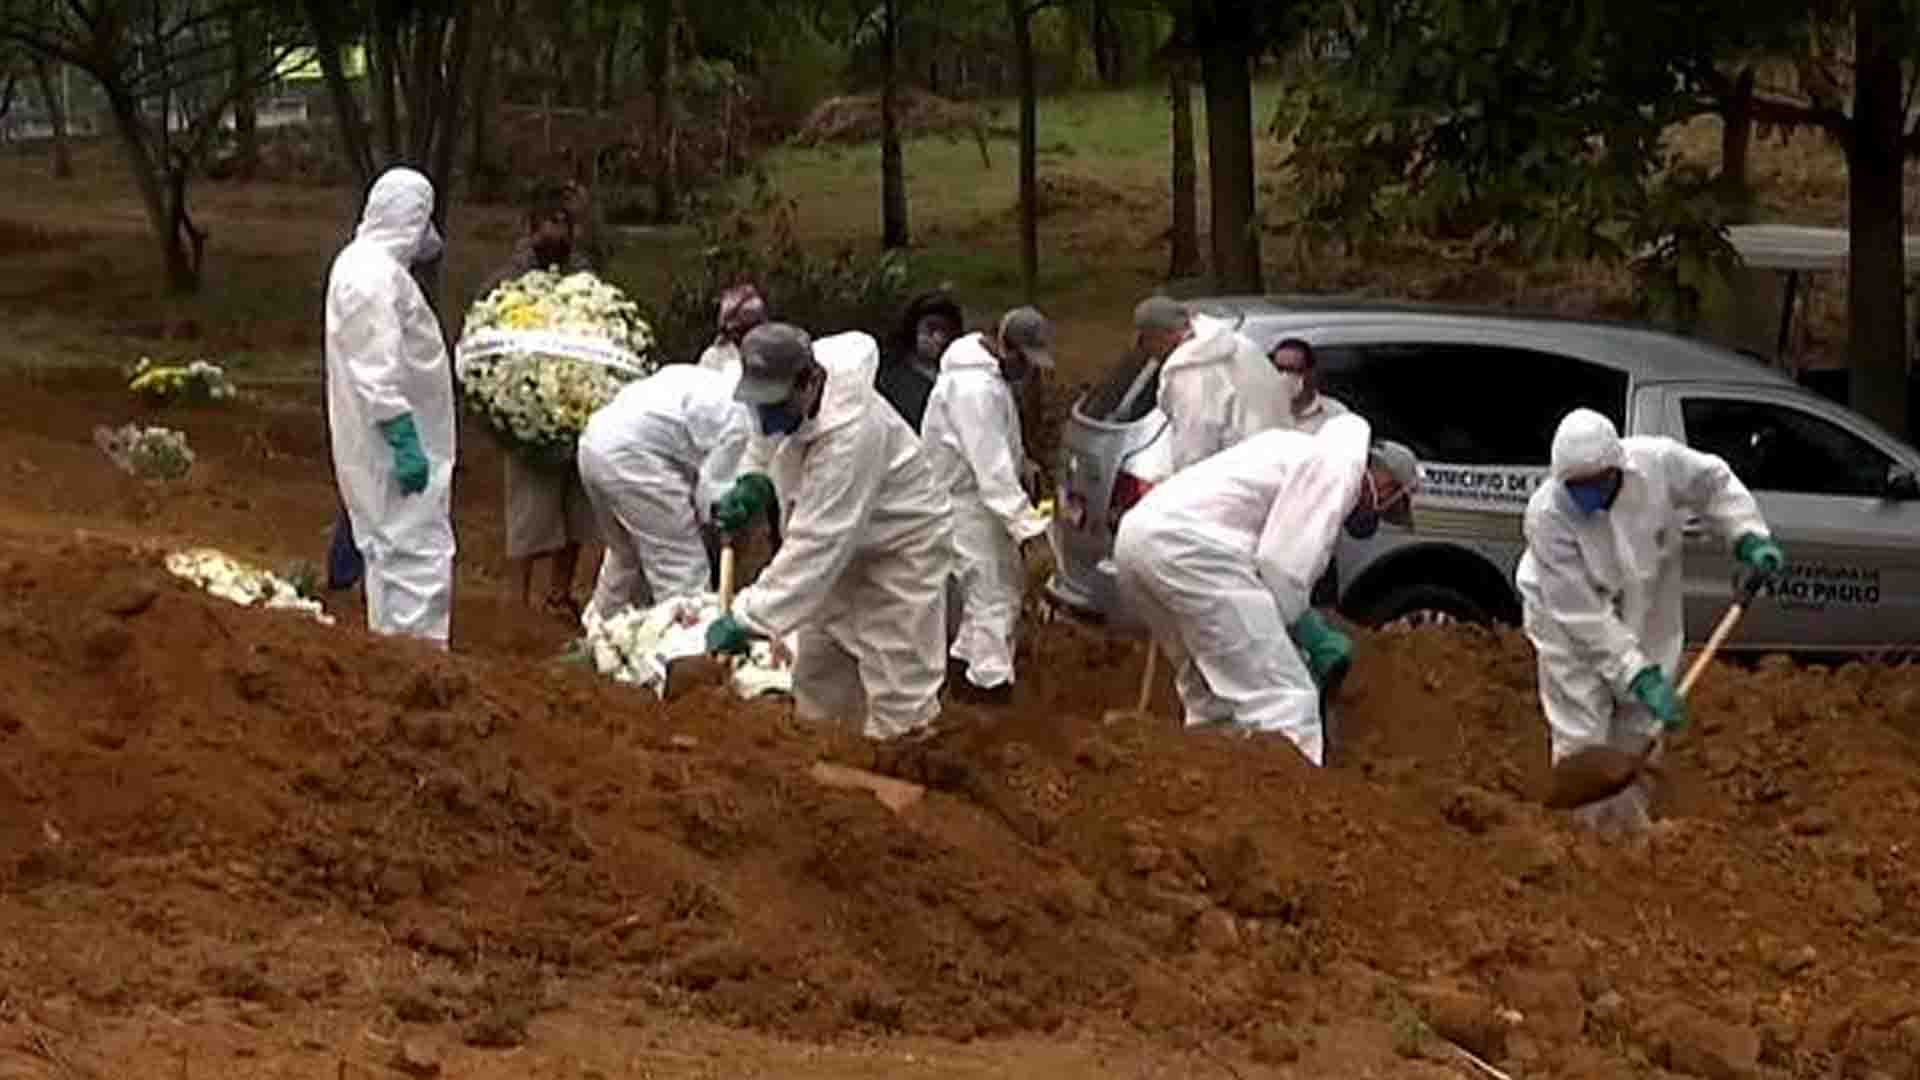 4 – W entierro de fallecidos por covid en Brasil